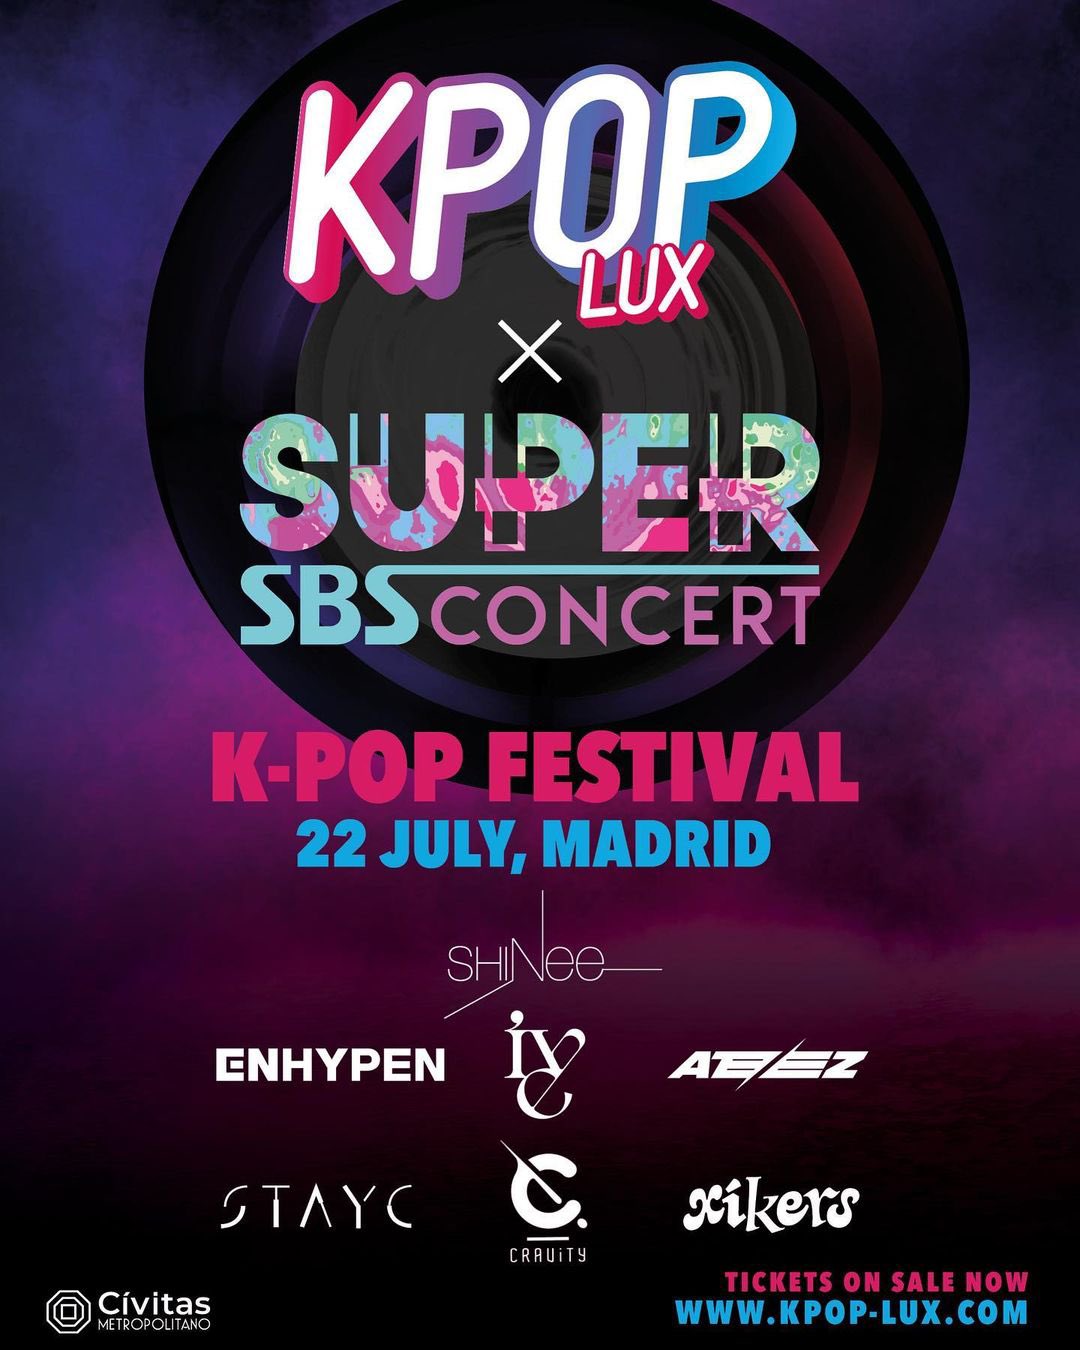 New Event: K-Pop Flex Festival - London - September 2023.